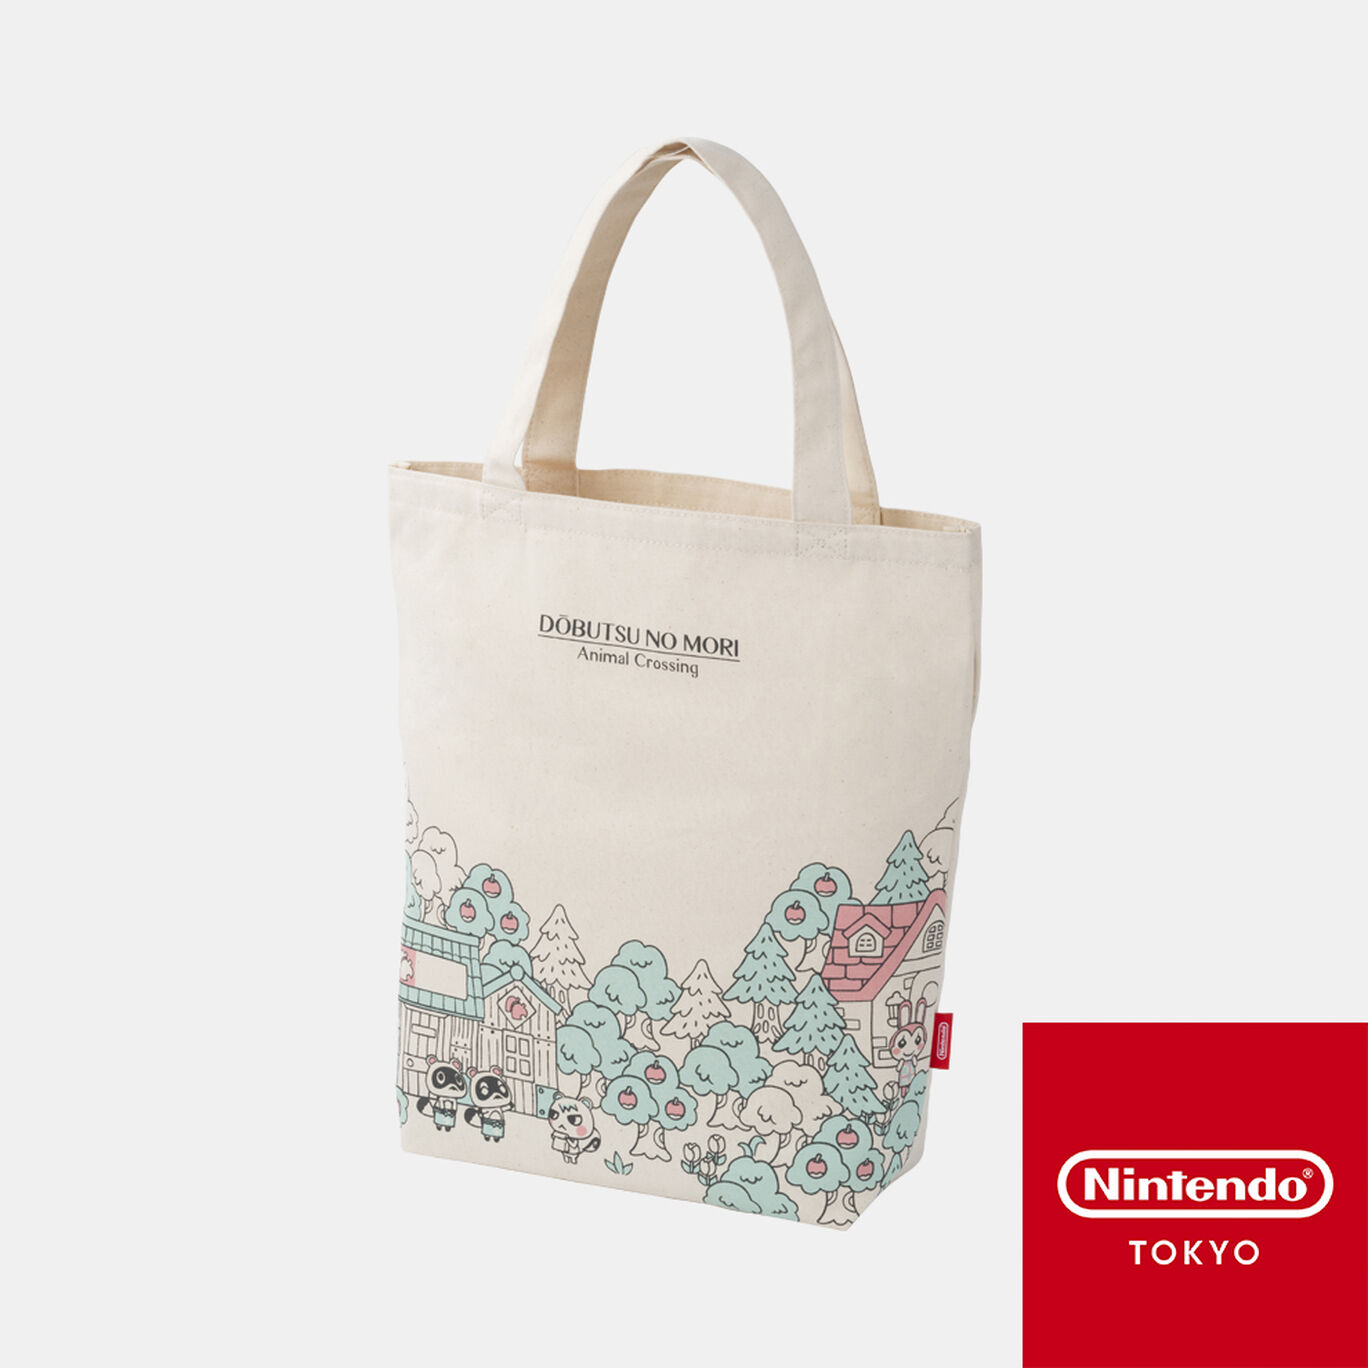 トートバッグ どうぶつの森【Nintendo TOKYO取り扱い商品】